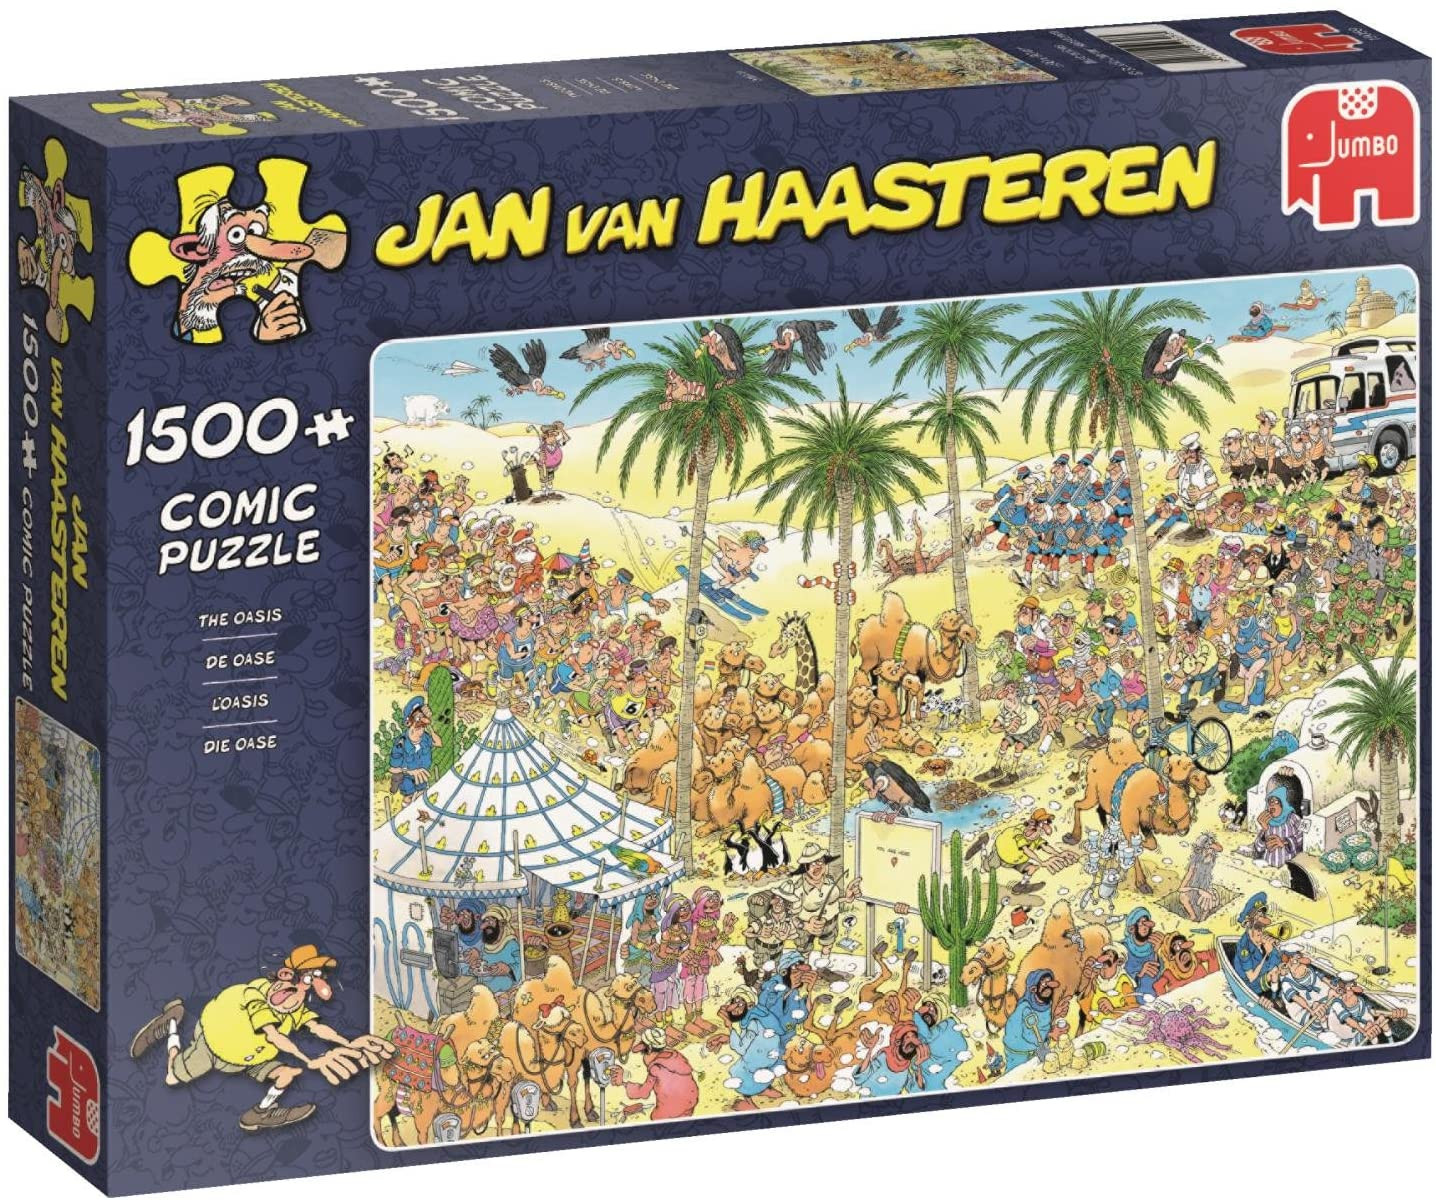 Puzzle 1500 pzs. Jan van Haasteren, The Oasis